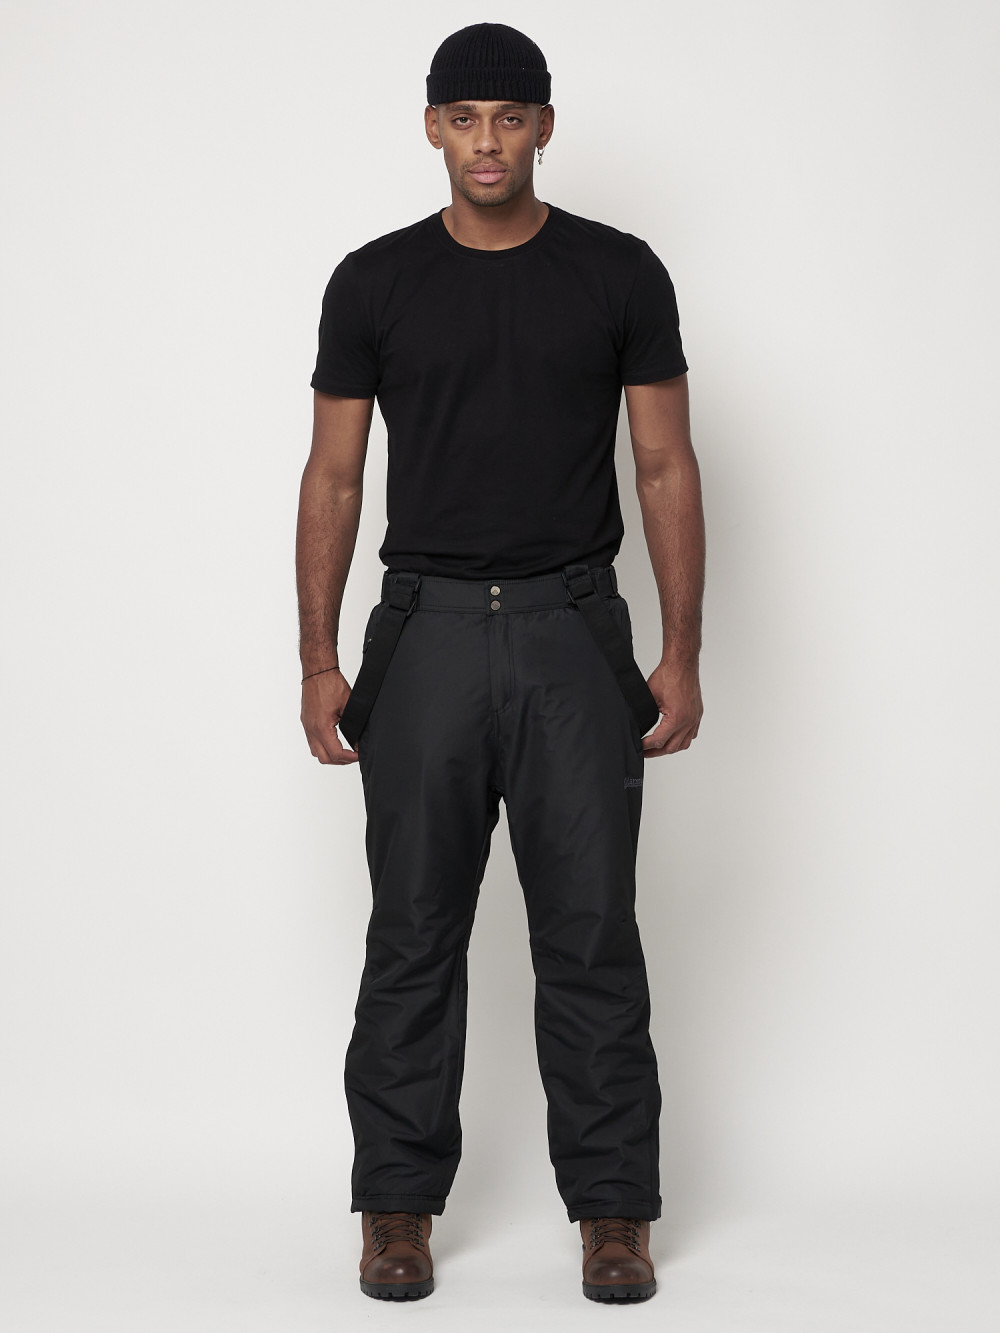 Полукомбинезон брюки горнолыжные MTFORCE мужские черного цвета 66414Ch, 58